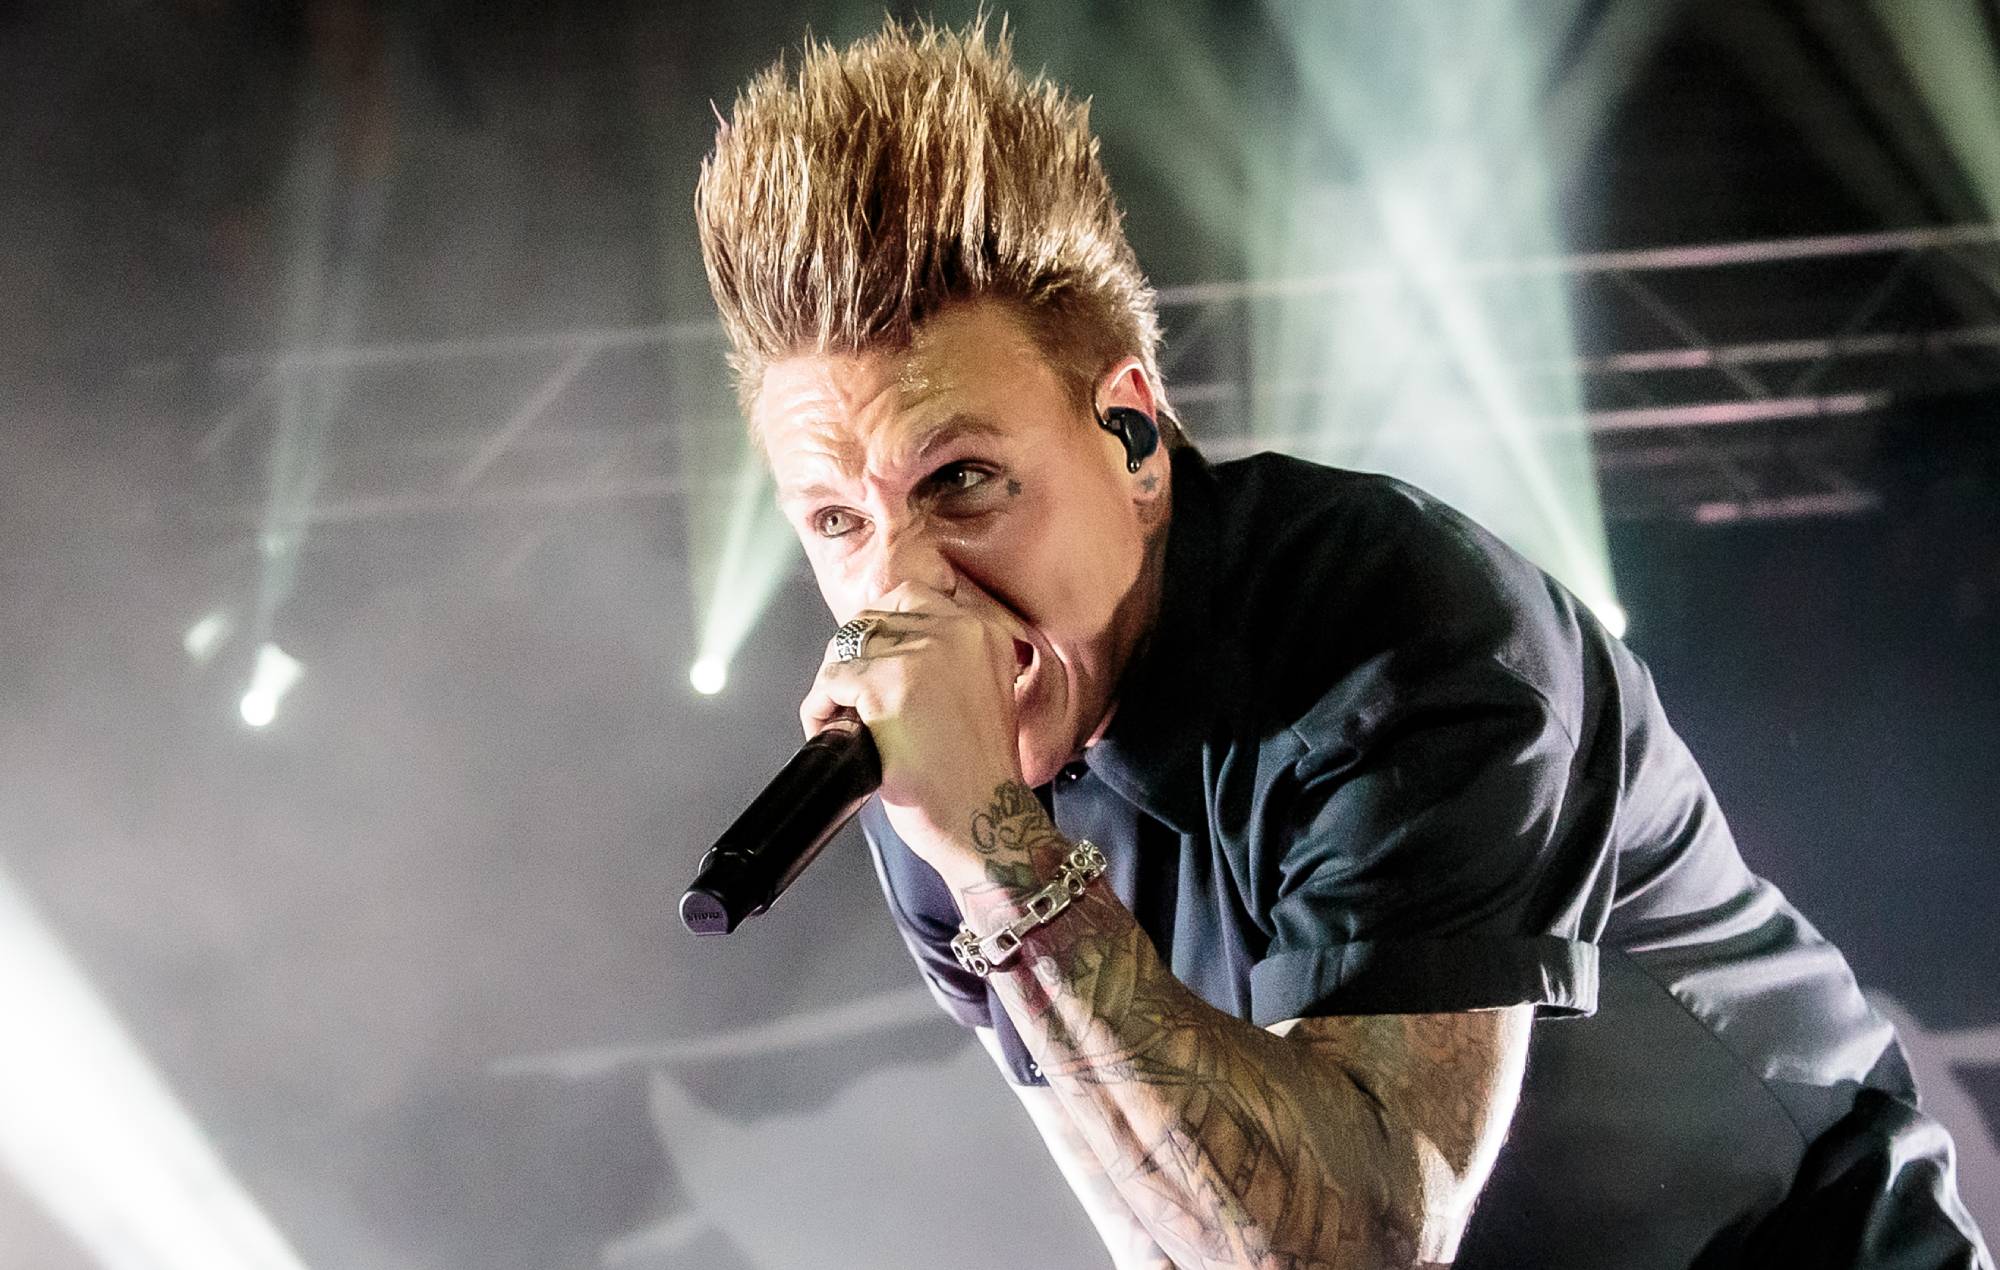 Papa Roach dice que no hará gira ni grabará nuevo disco hasta 2022: 